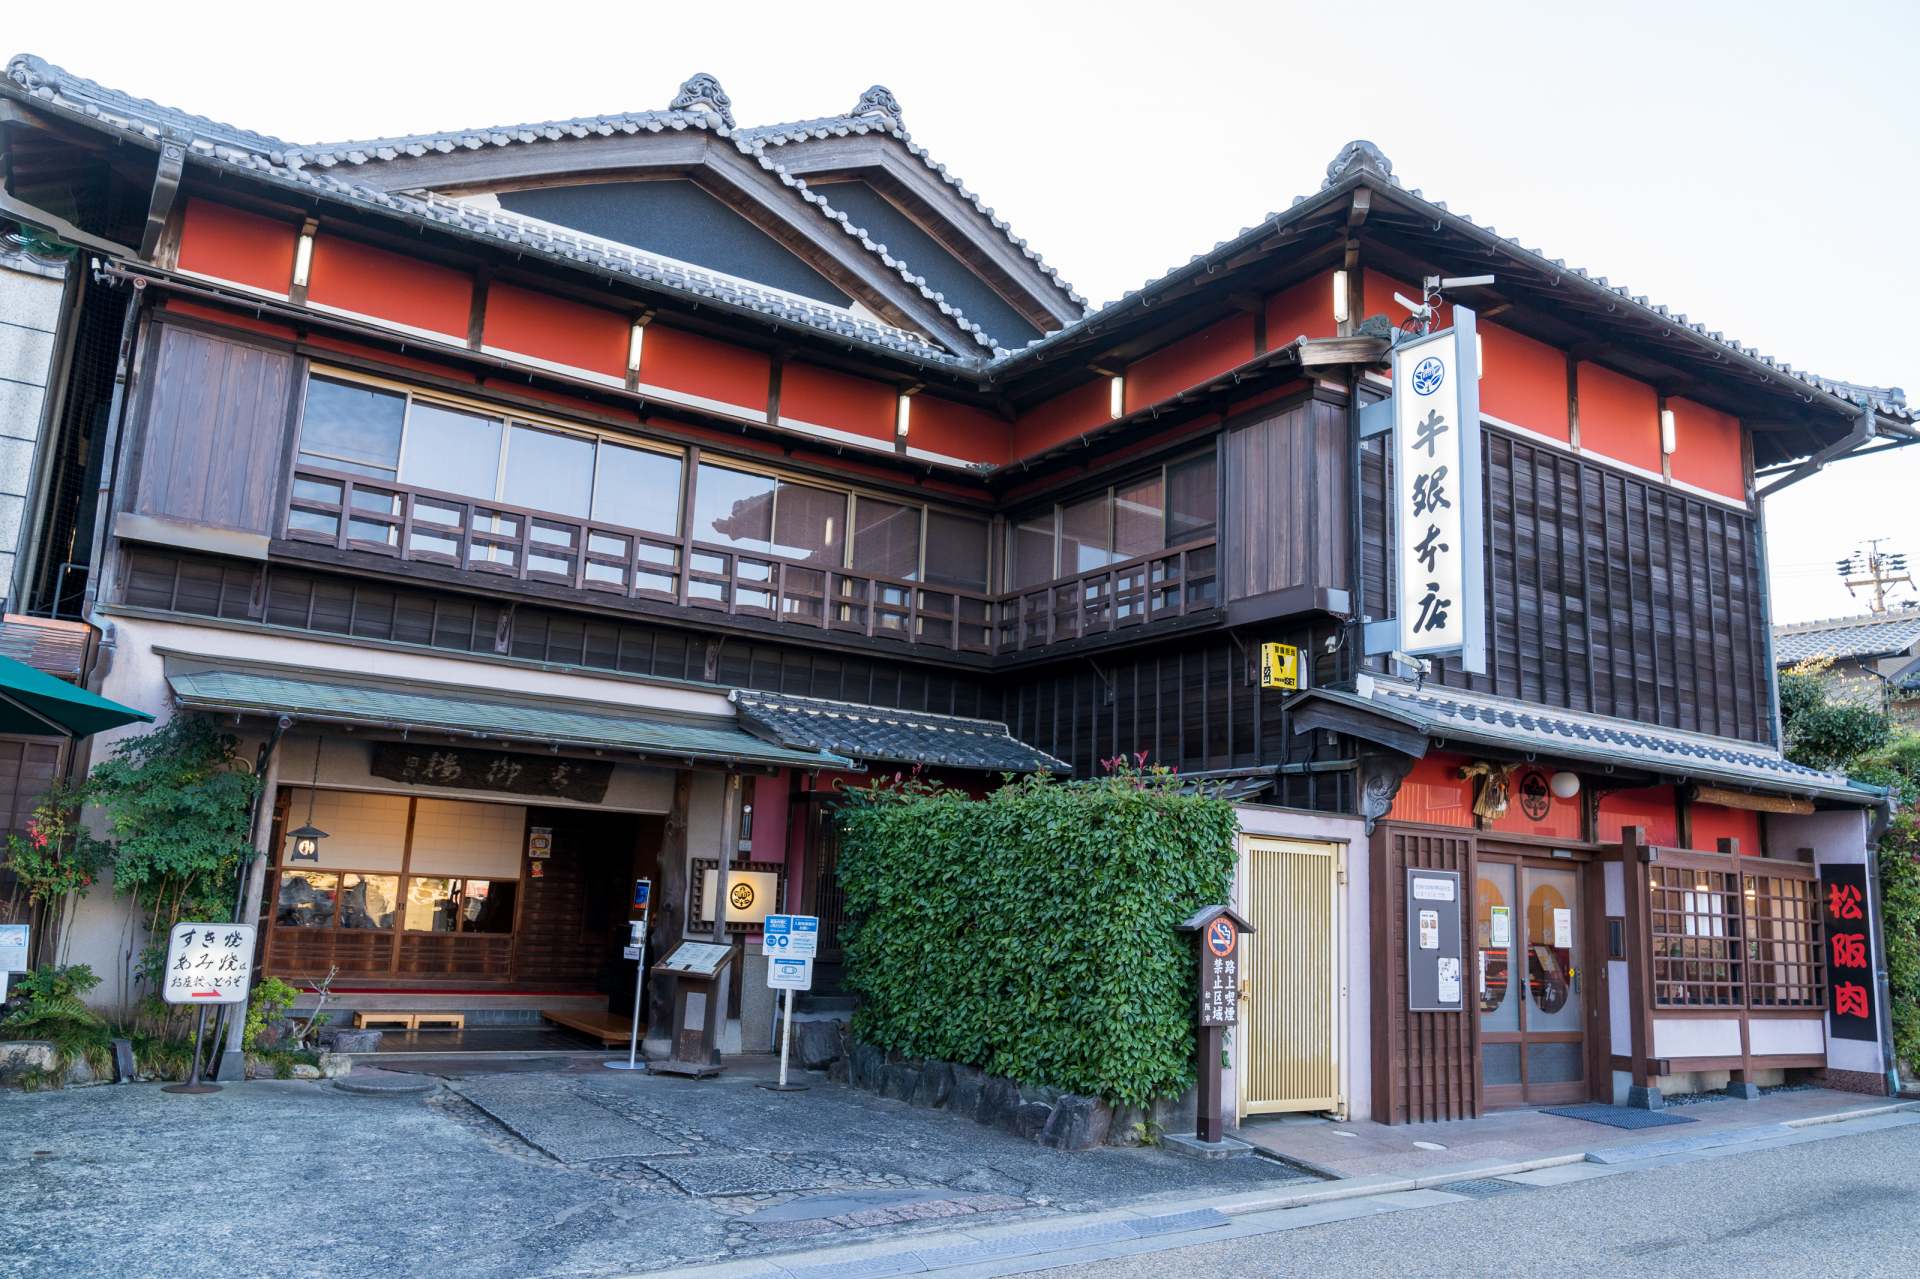 L'aspect majestueux de l'architecture japonaise se distingue parmi le vieux paysage urbain